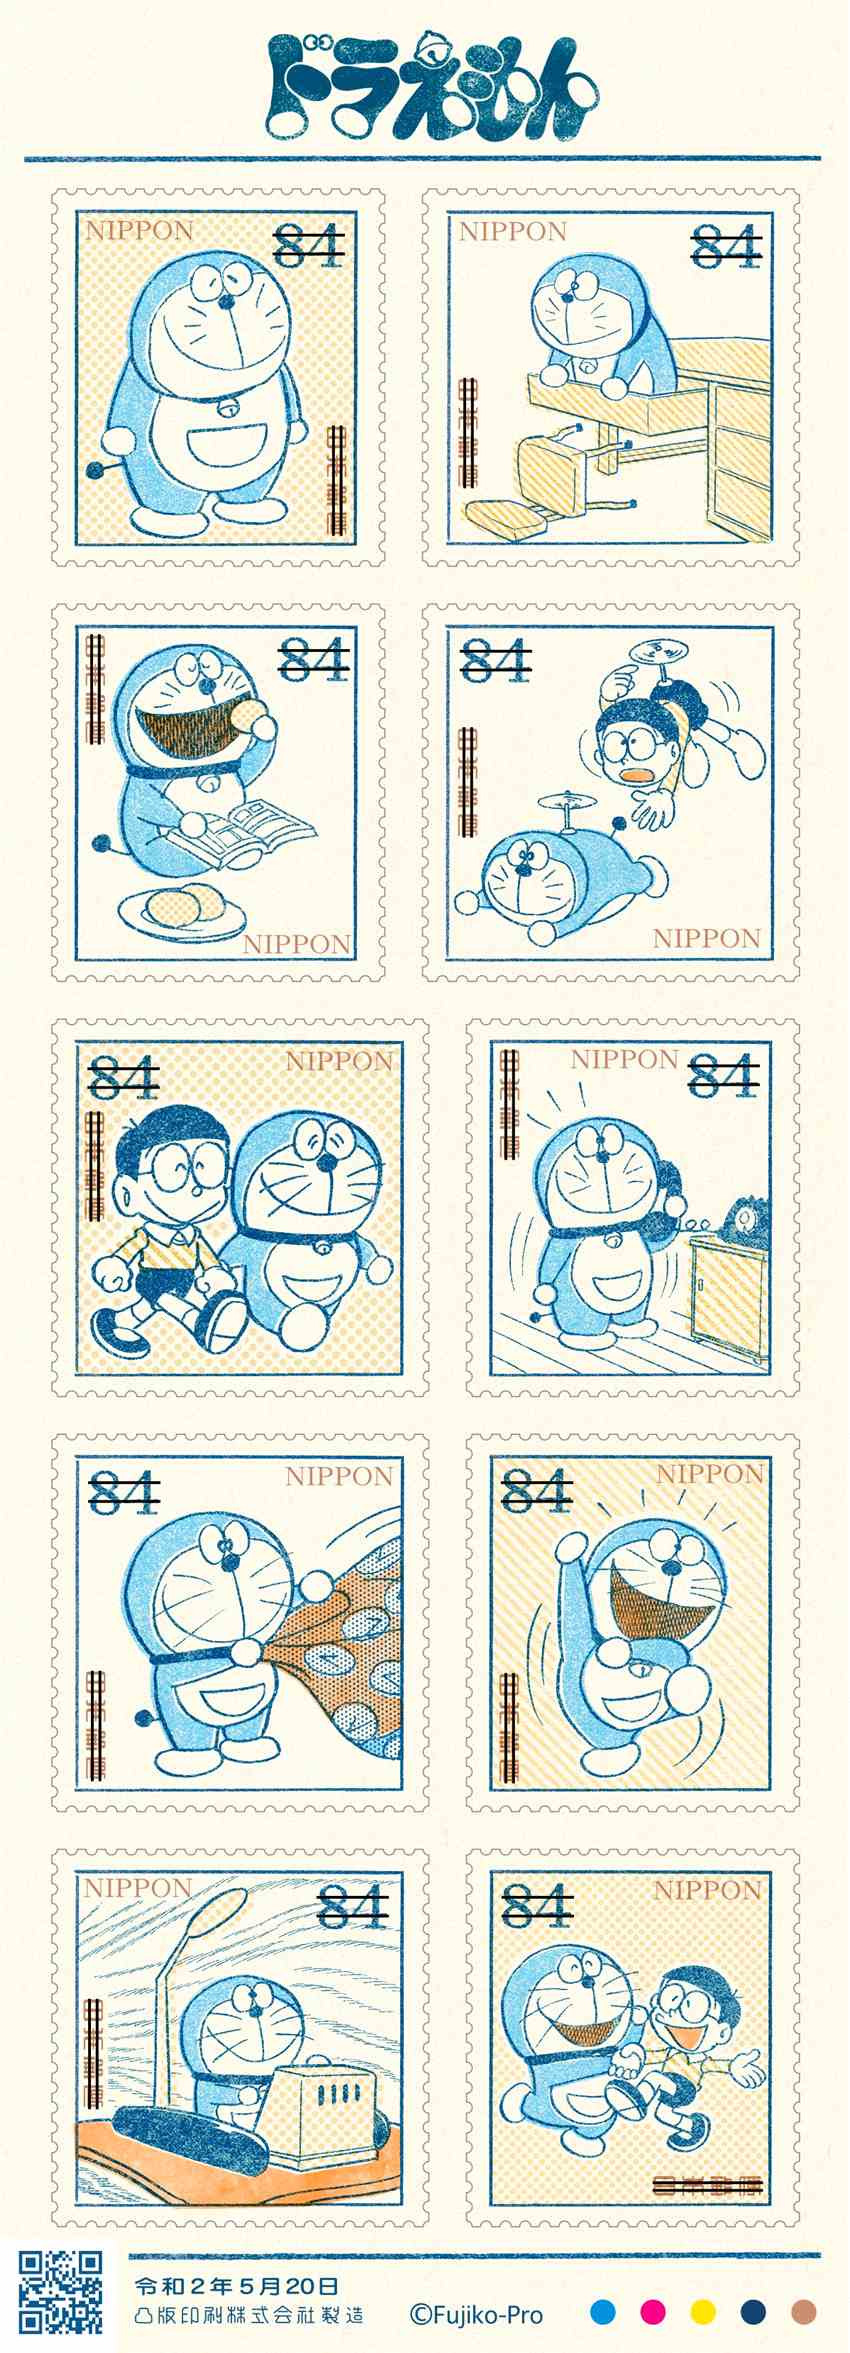 一起回忆下早期蓝胖子 《哆啦A梦》50周年纪念邮票公开